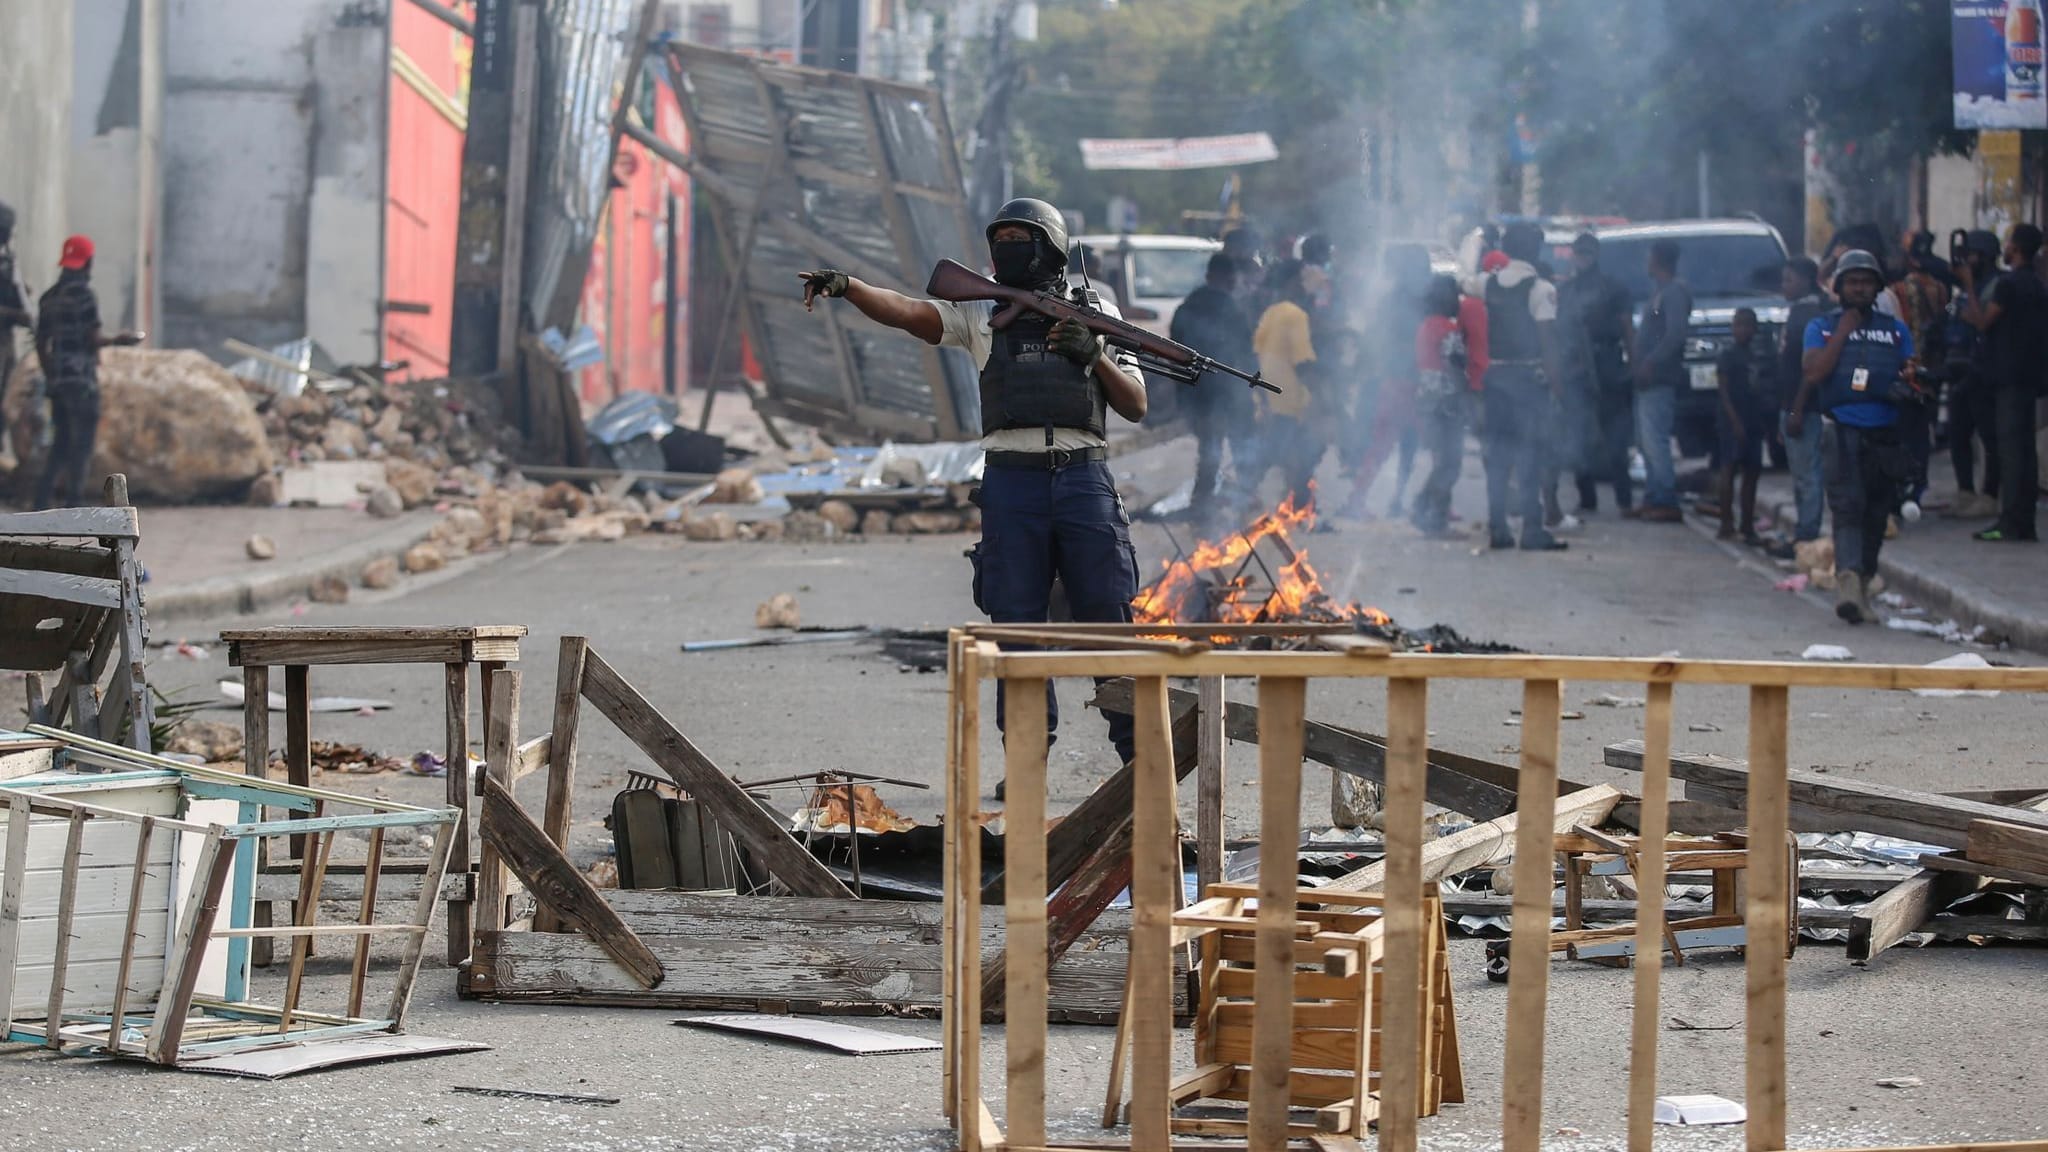 Berichte: Banden greifen Regierungsgebäude in Haiti an